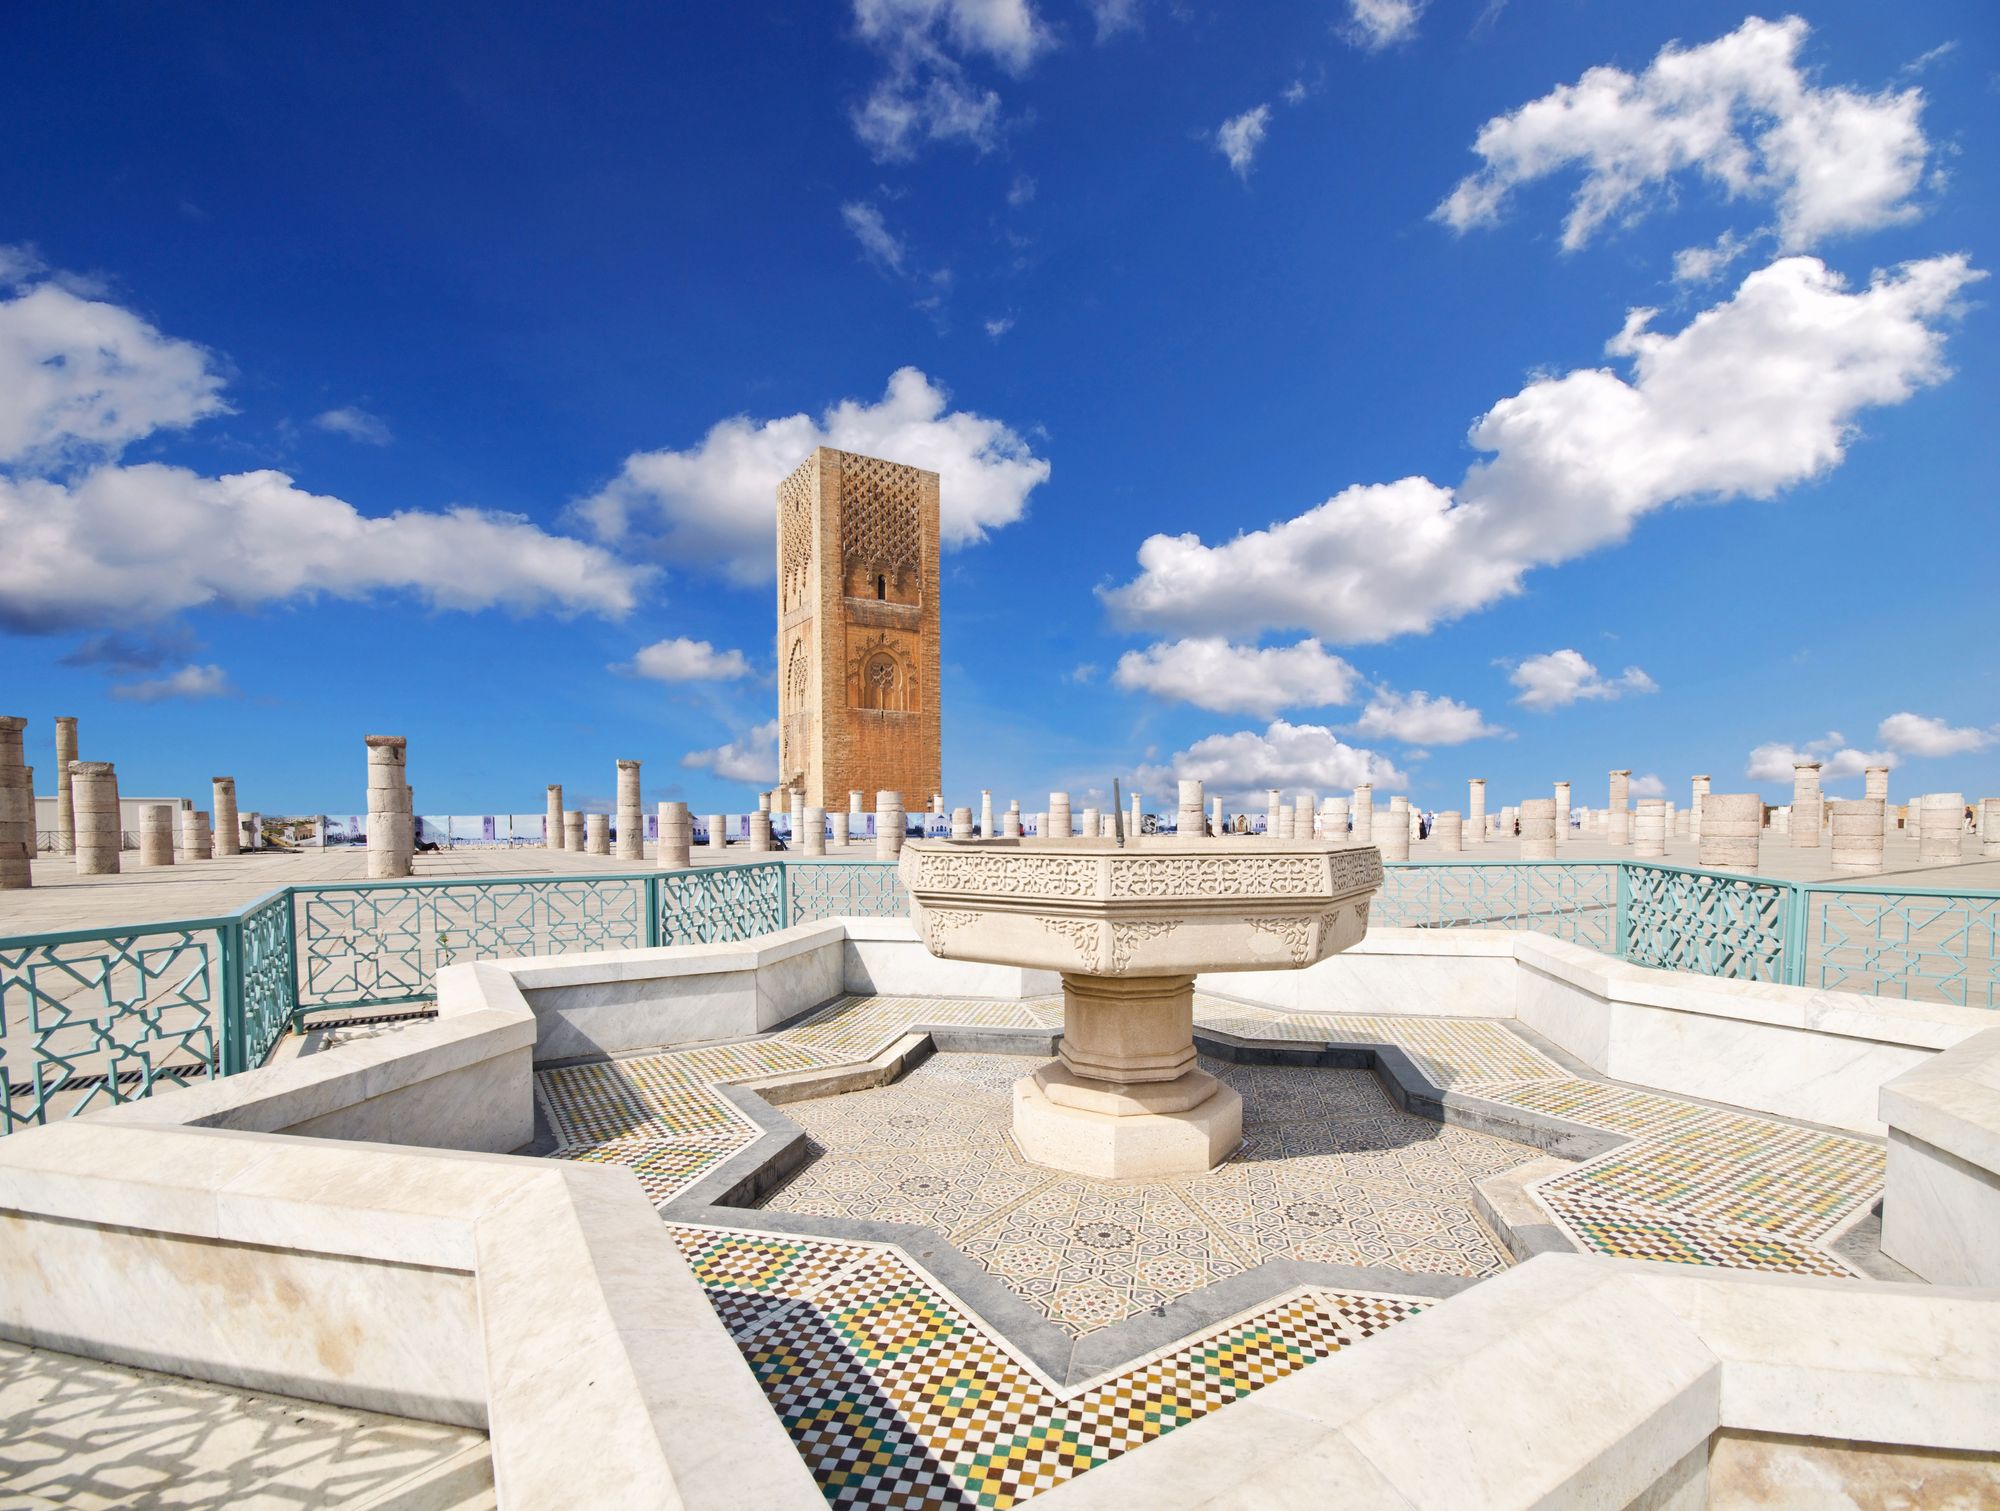 Al-Hassan Mosque complex in Rabat